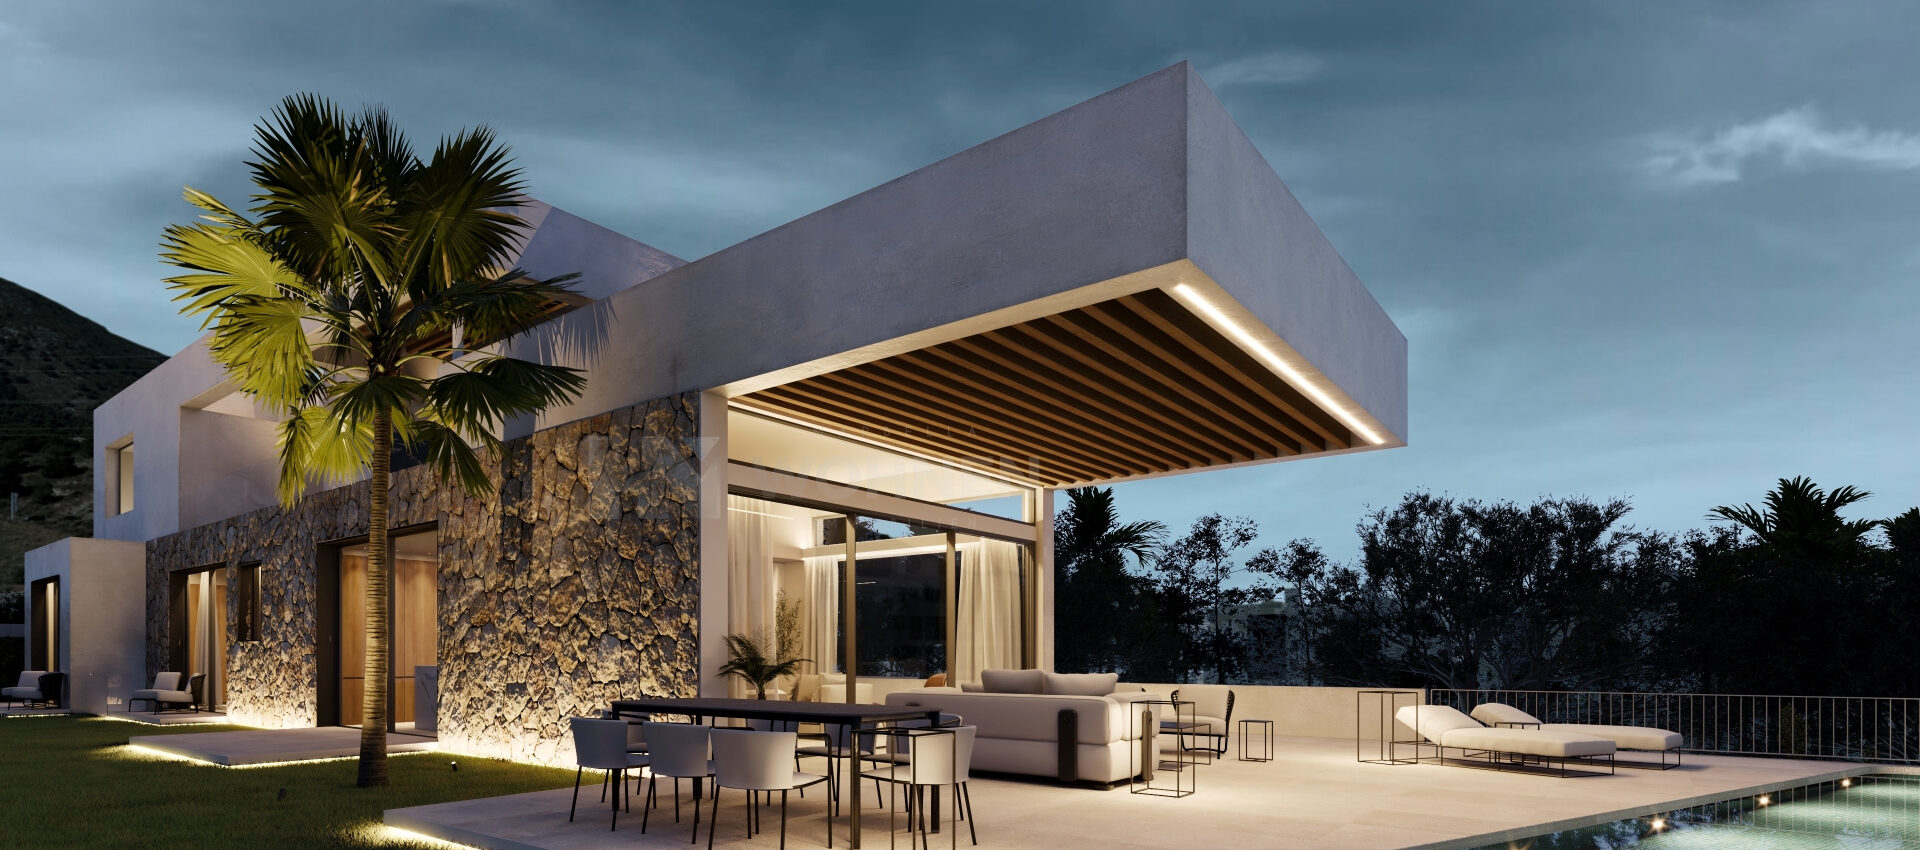 Das Haus Ihrer Träume an der Costa del Sol